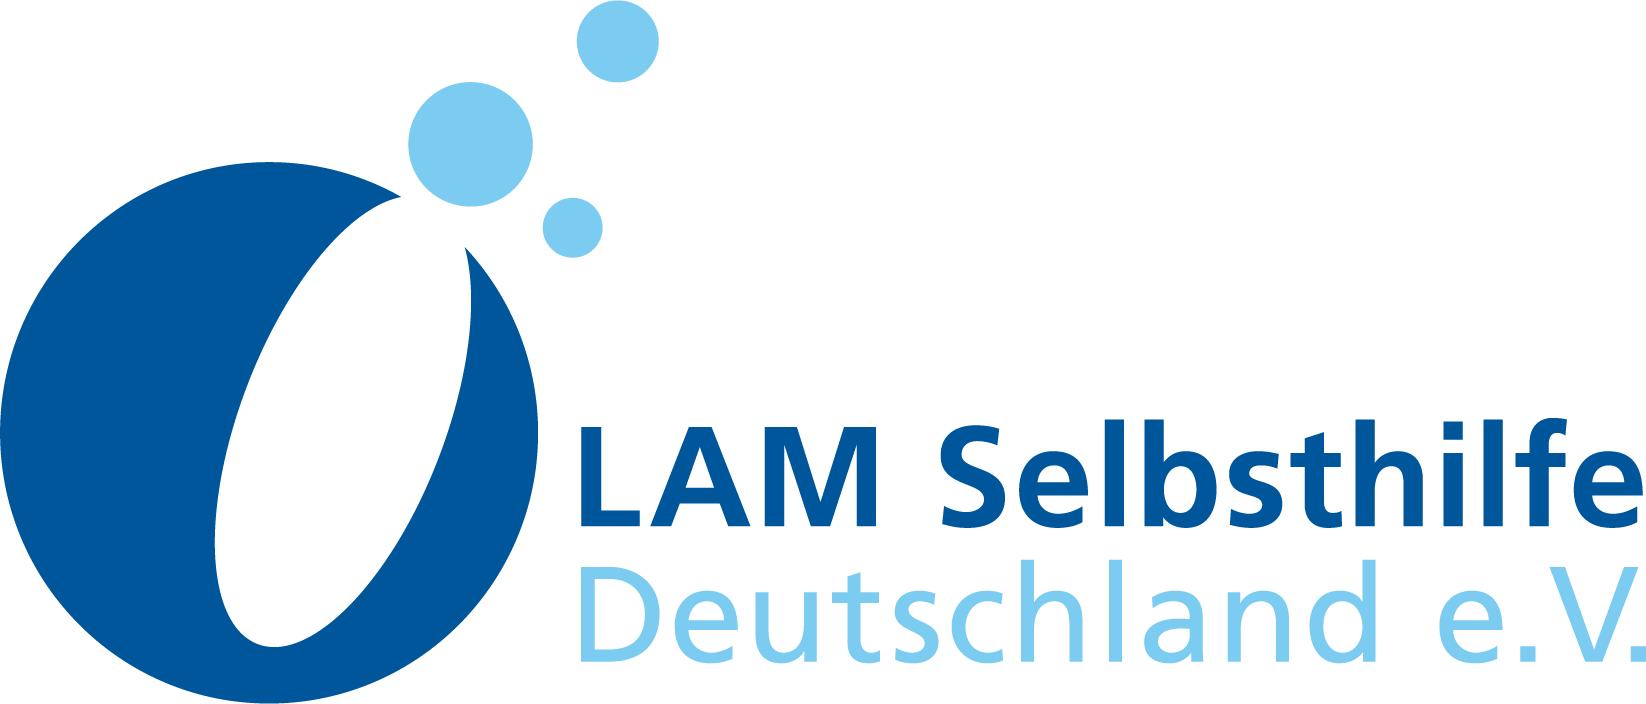 Logo LAM Selbsthilfe Deutschland e.V.